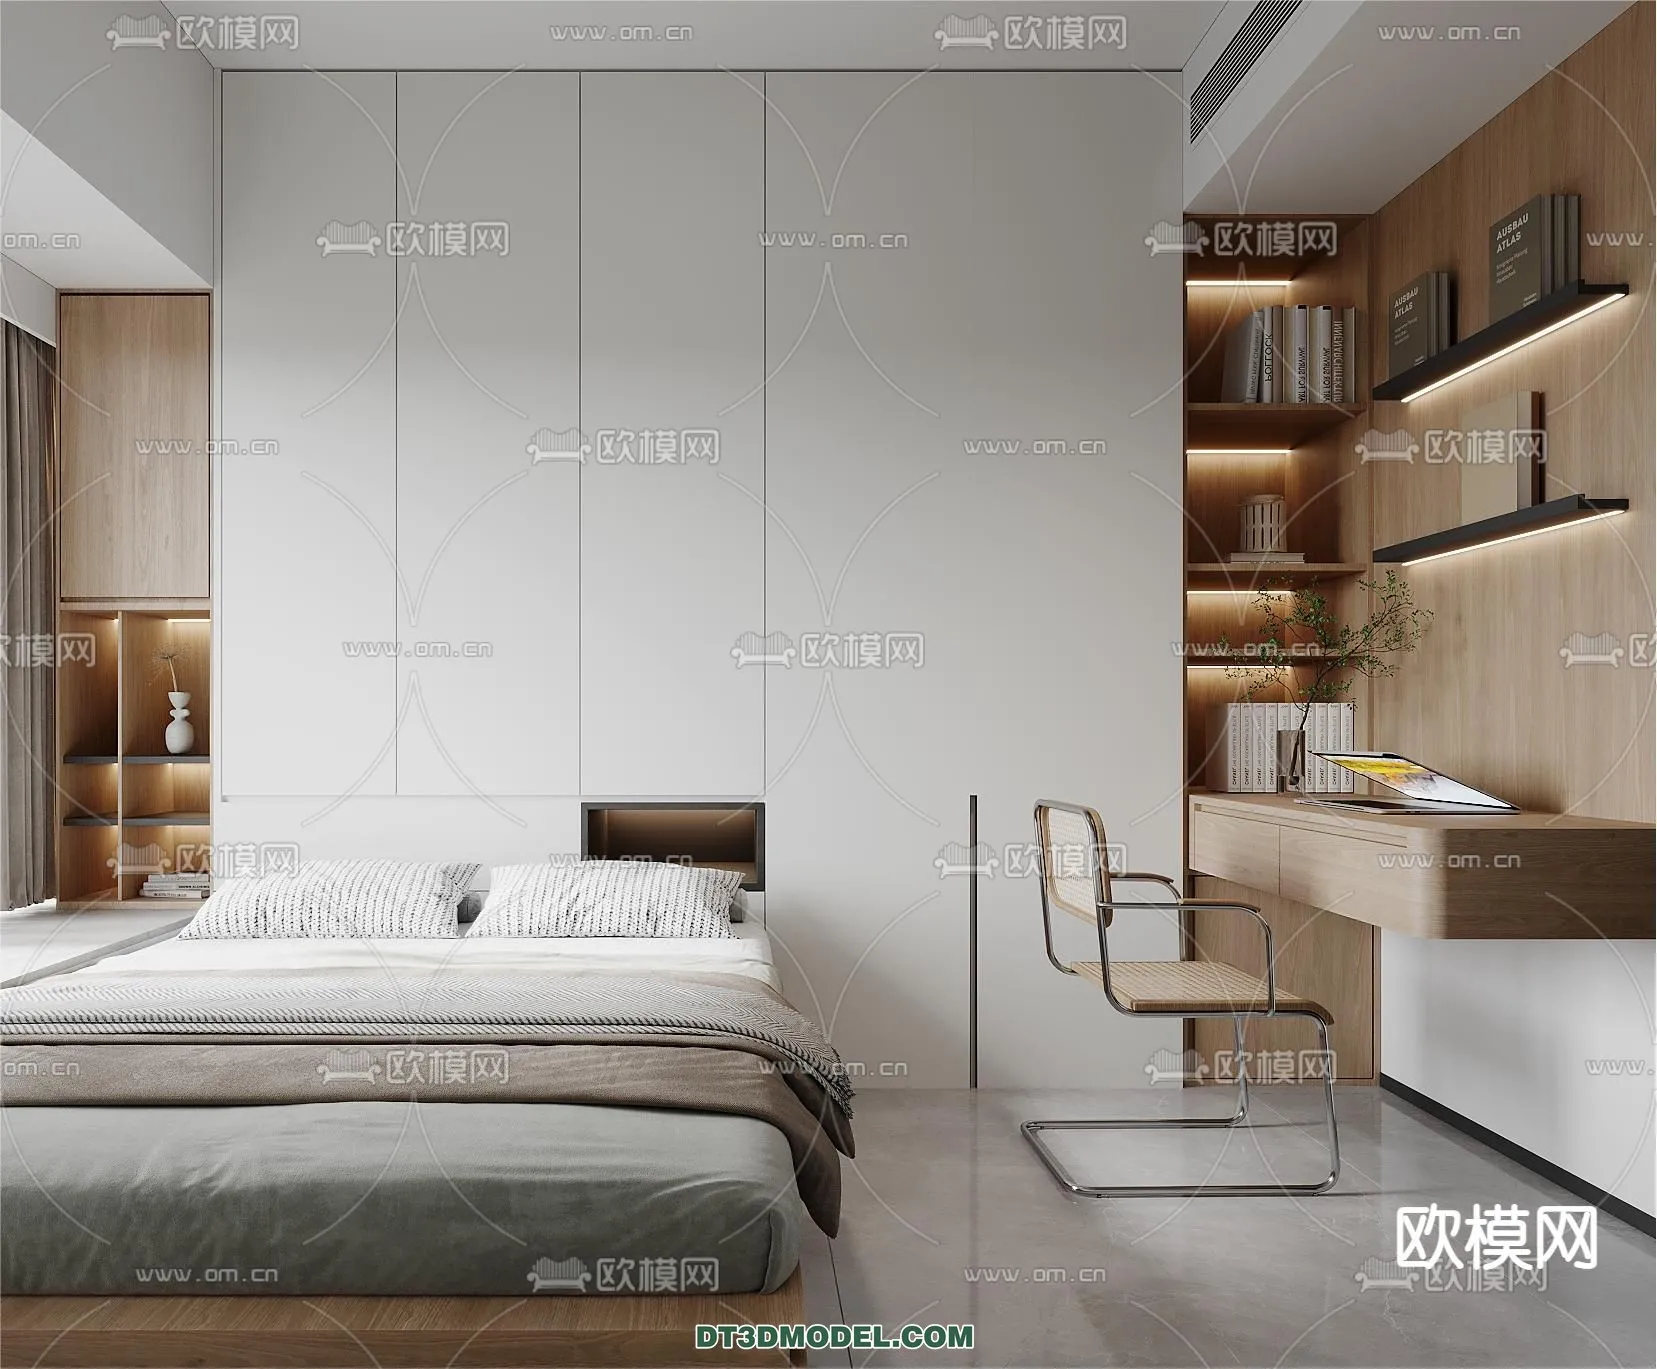 Tatami Bedroom – Japan Bedroom – 3D Scene – 075